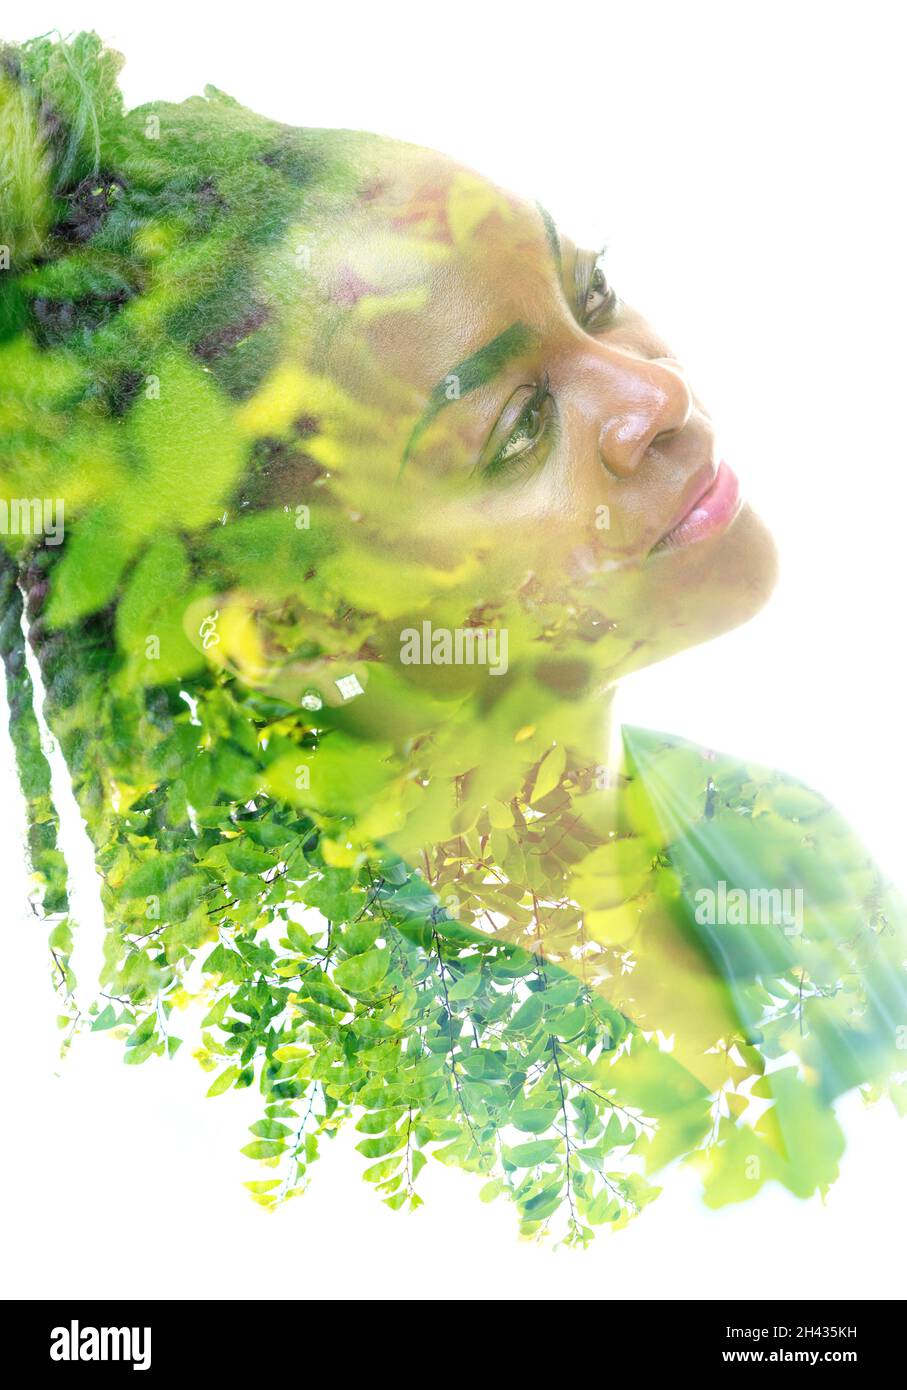 Un ritratto a doppia esposizione di un modello femminile combinato con un'immagine di ramoscelli verdi. La vita nella natura. Foto Stock